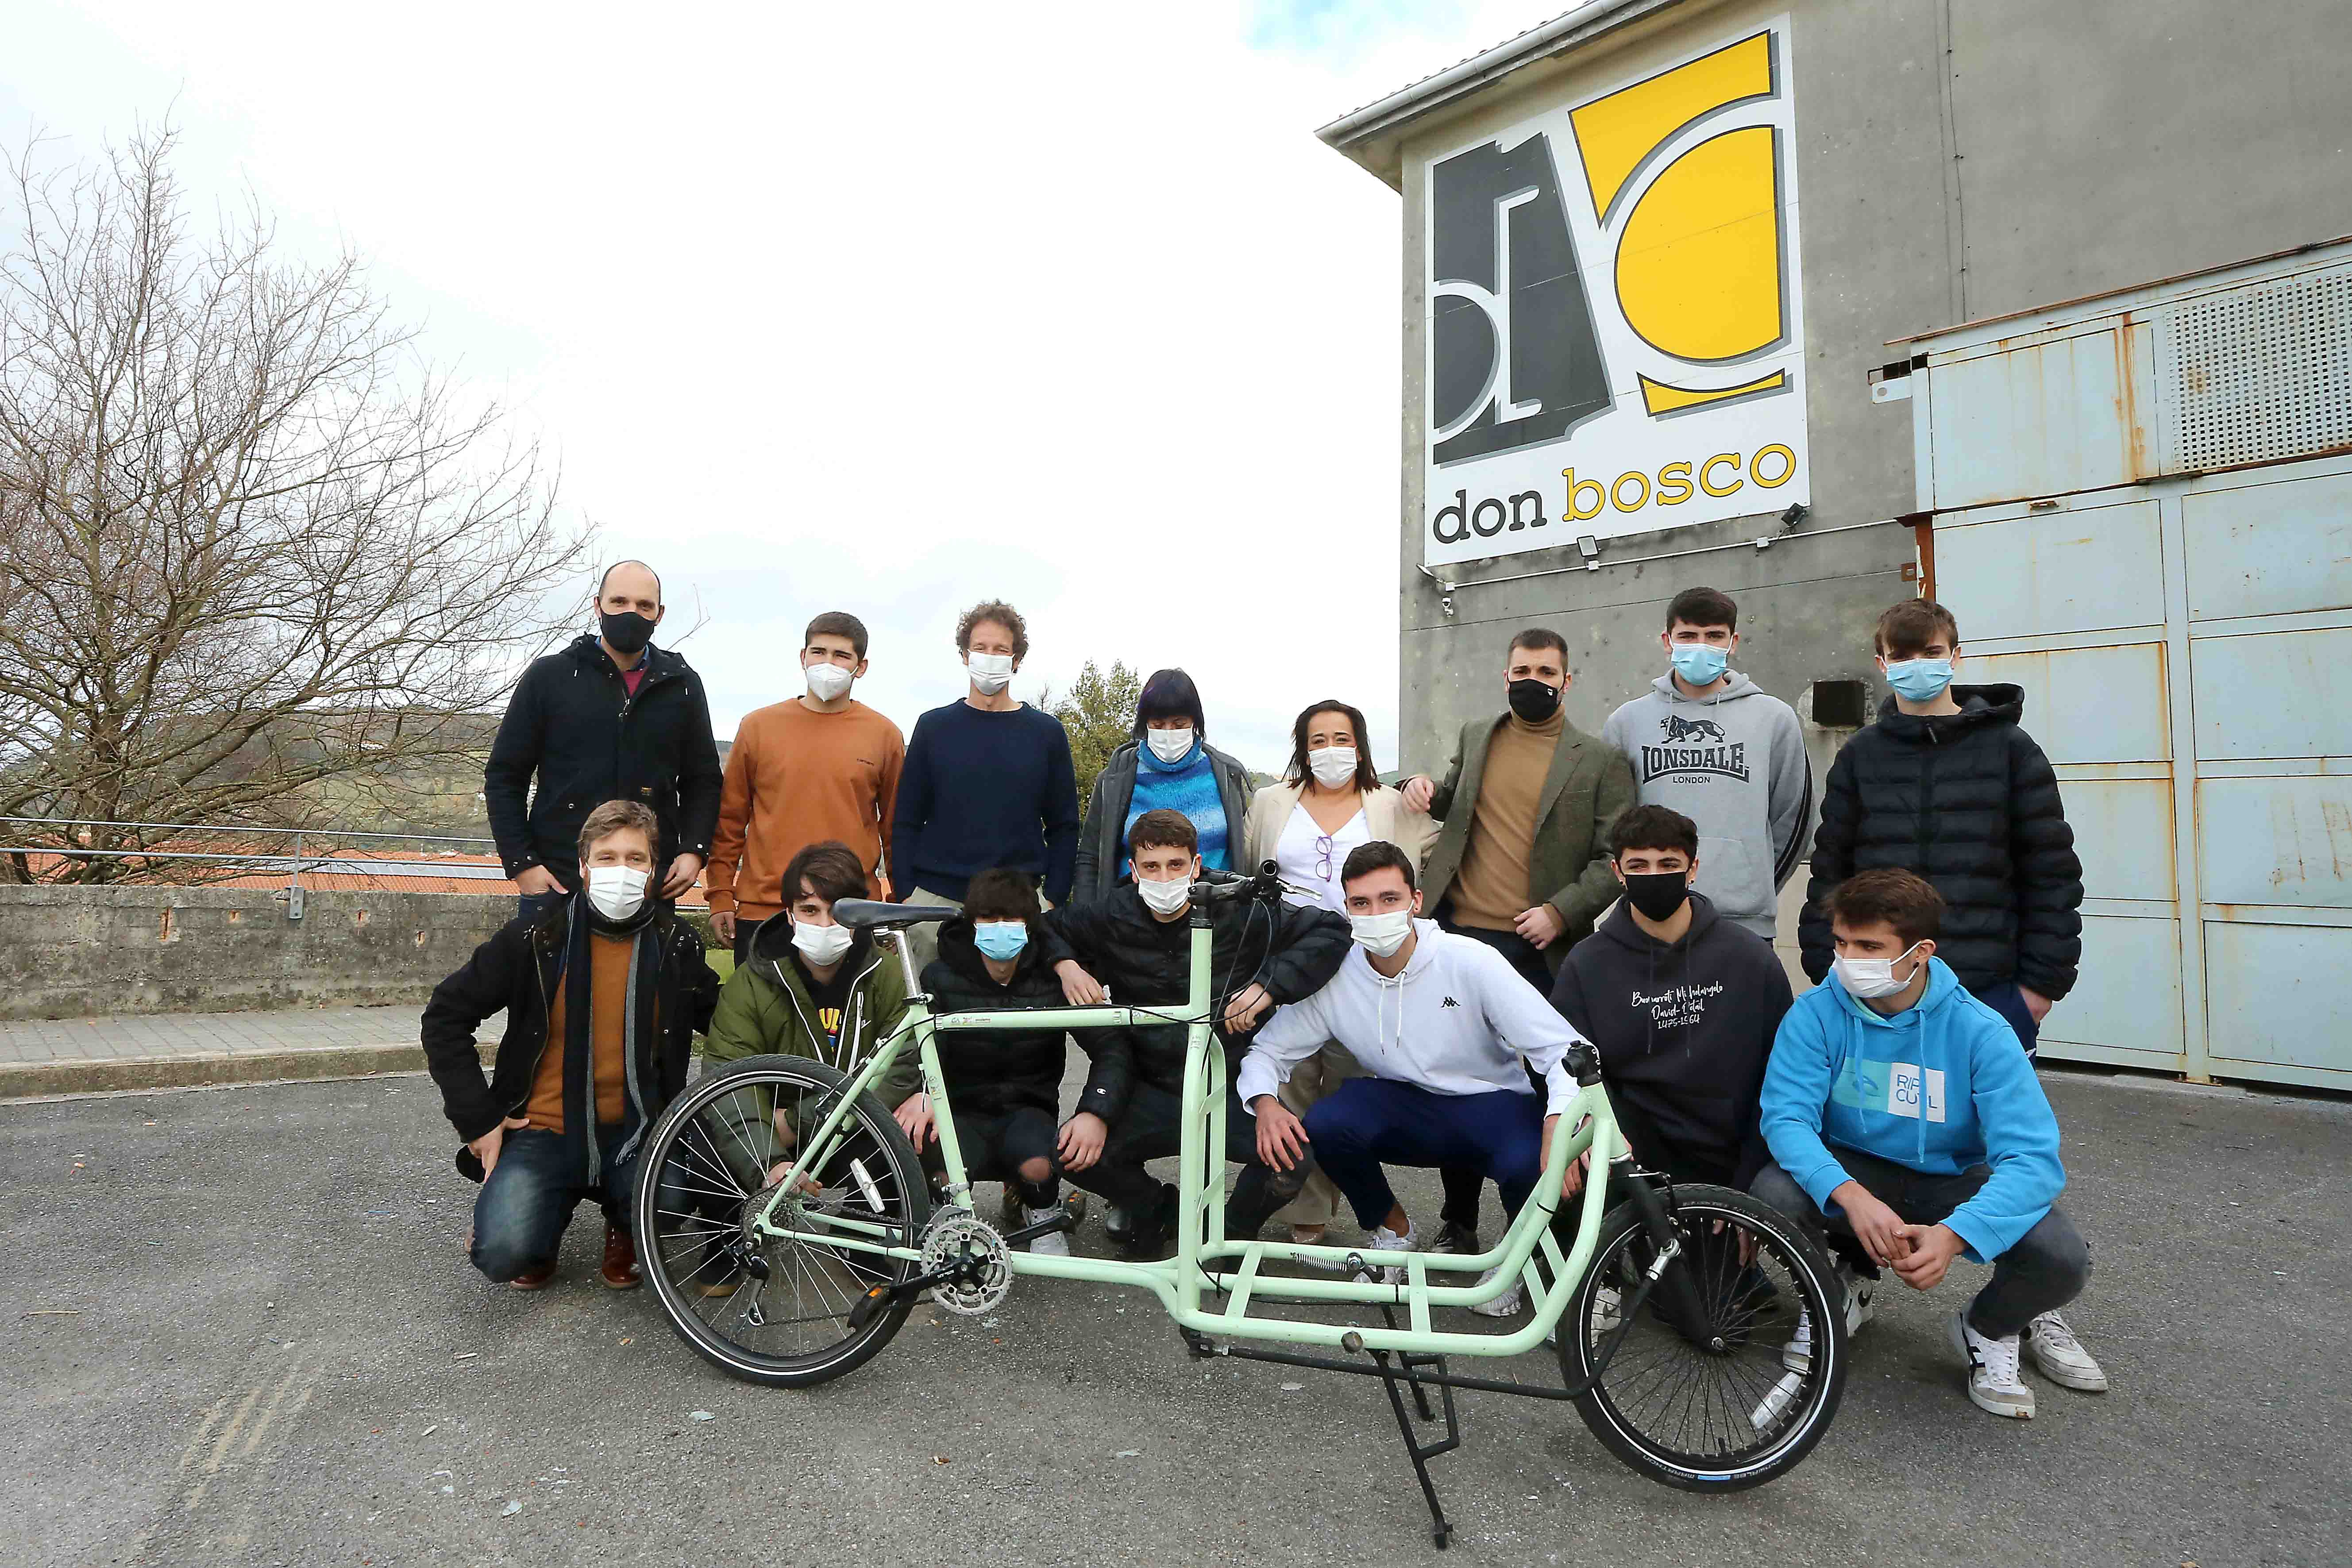 Movilidad presenta una nueva bicicleta cargo diseñada por el alumnado de Don Bosco que nace para fomentar el reparto de mercancías en bicicleta